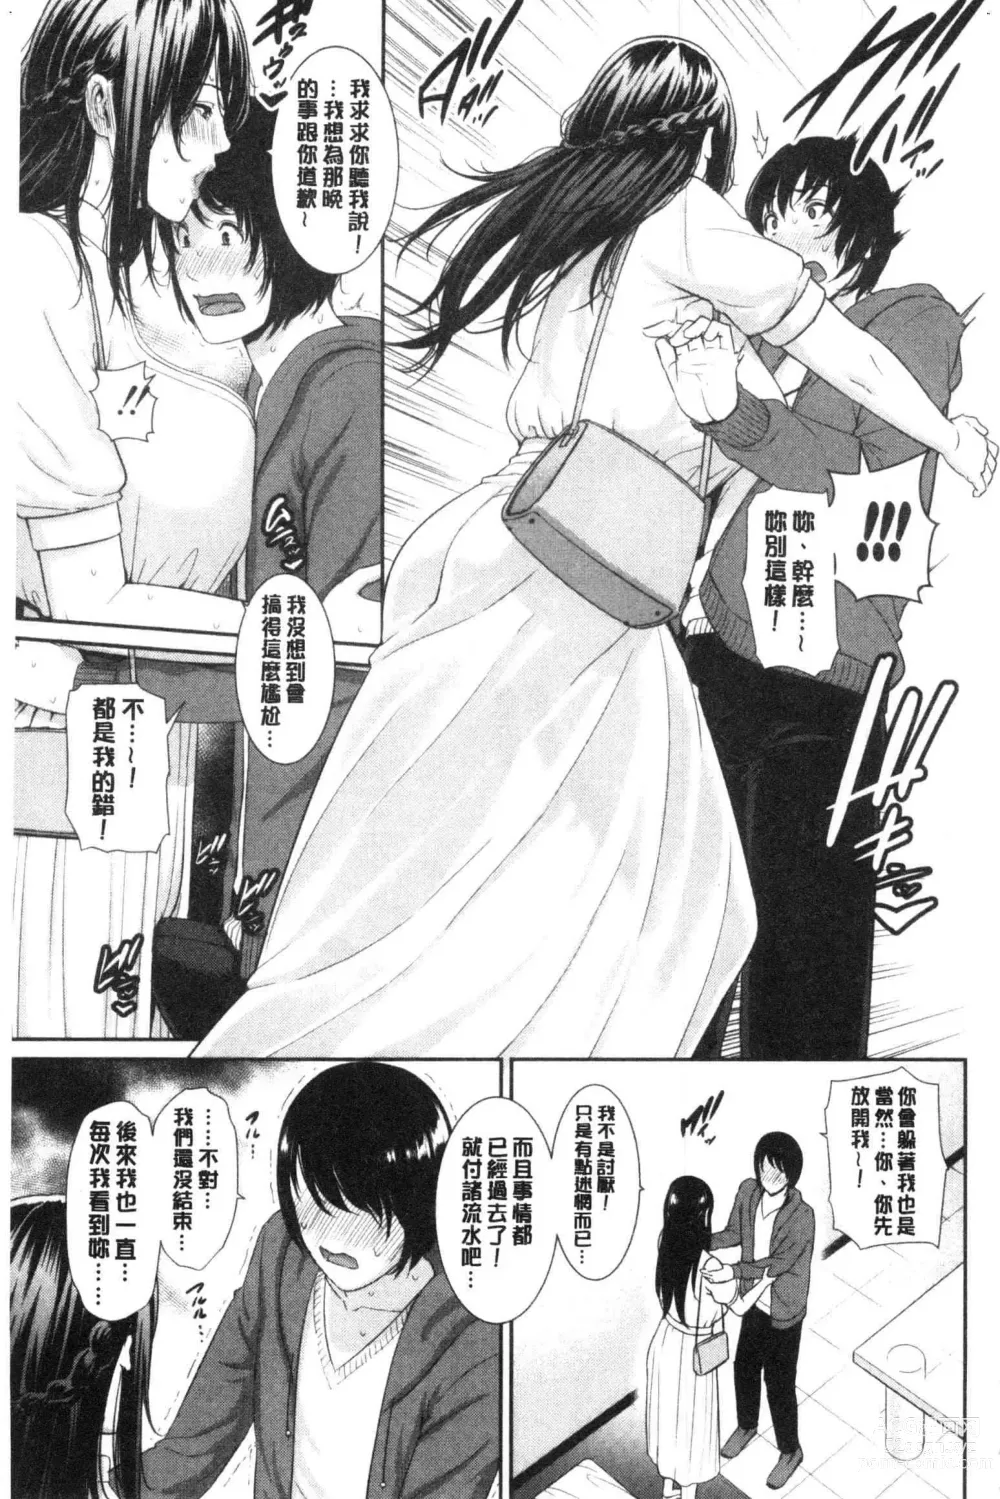 Page 176 of manga Kaa-san to Sex ni Oboreru